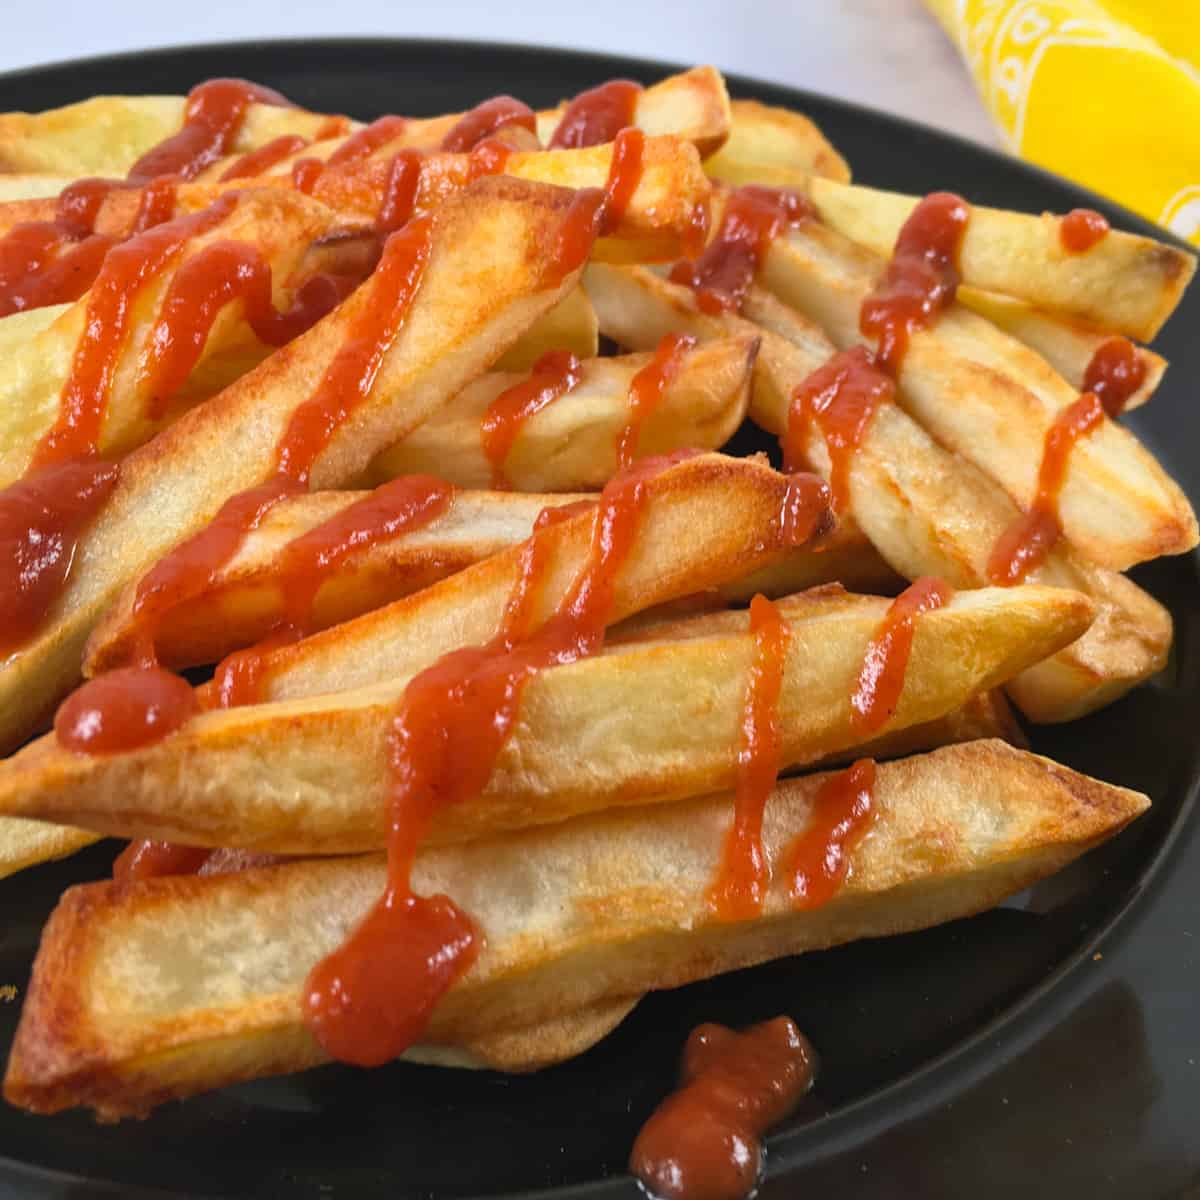 patatas fritas con ketchup